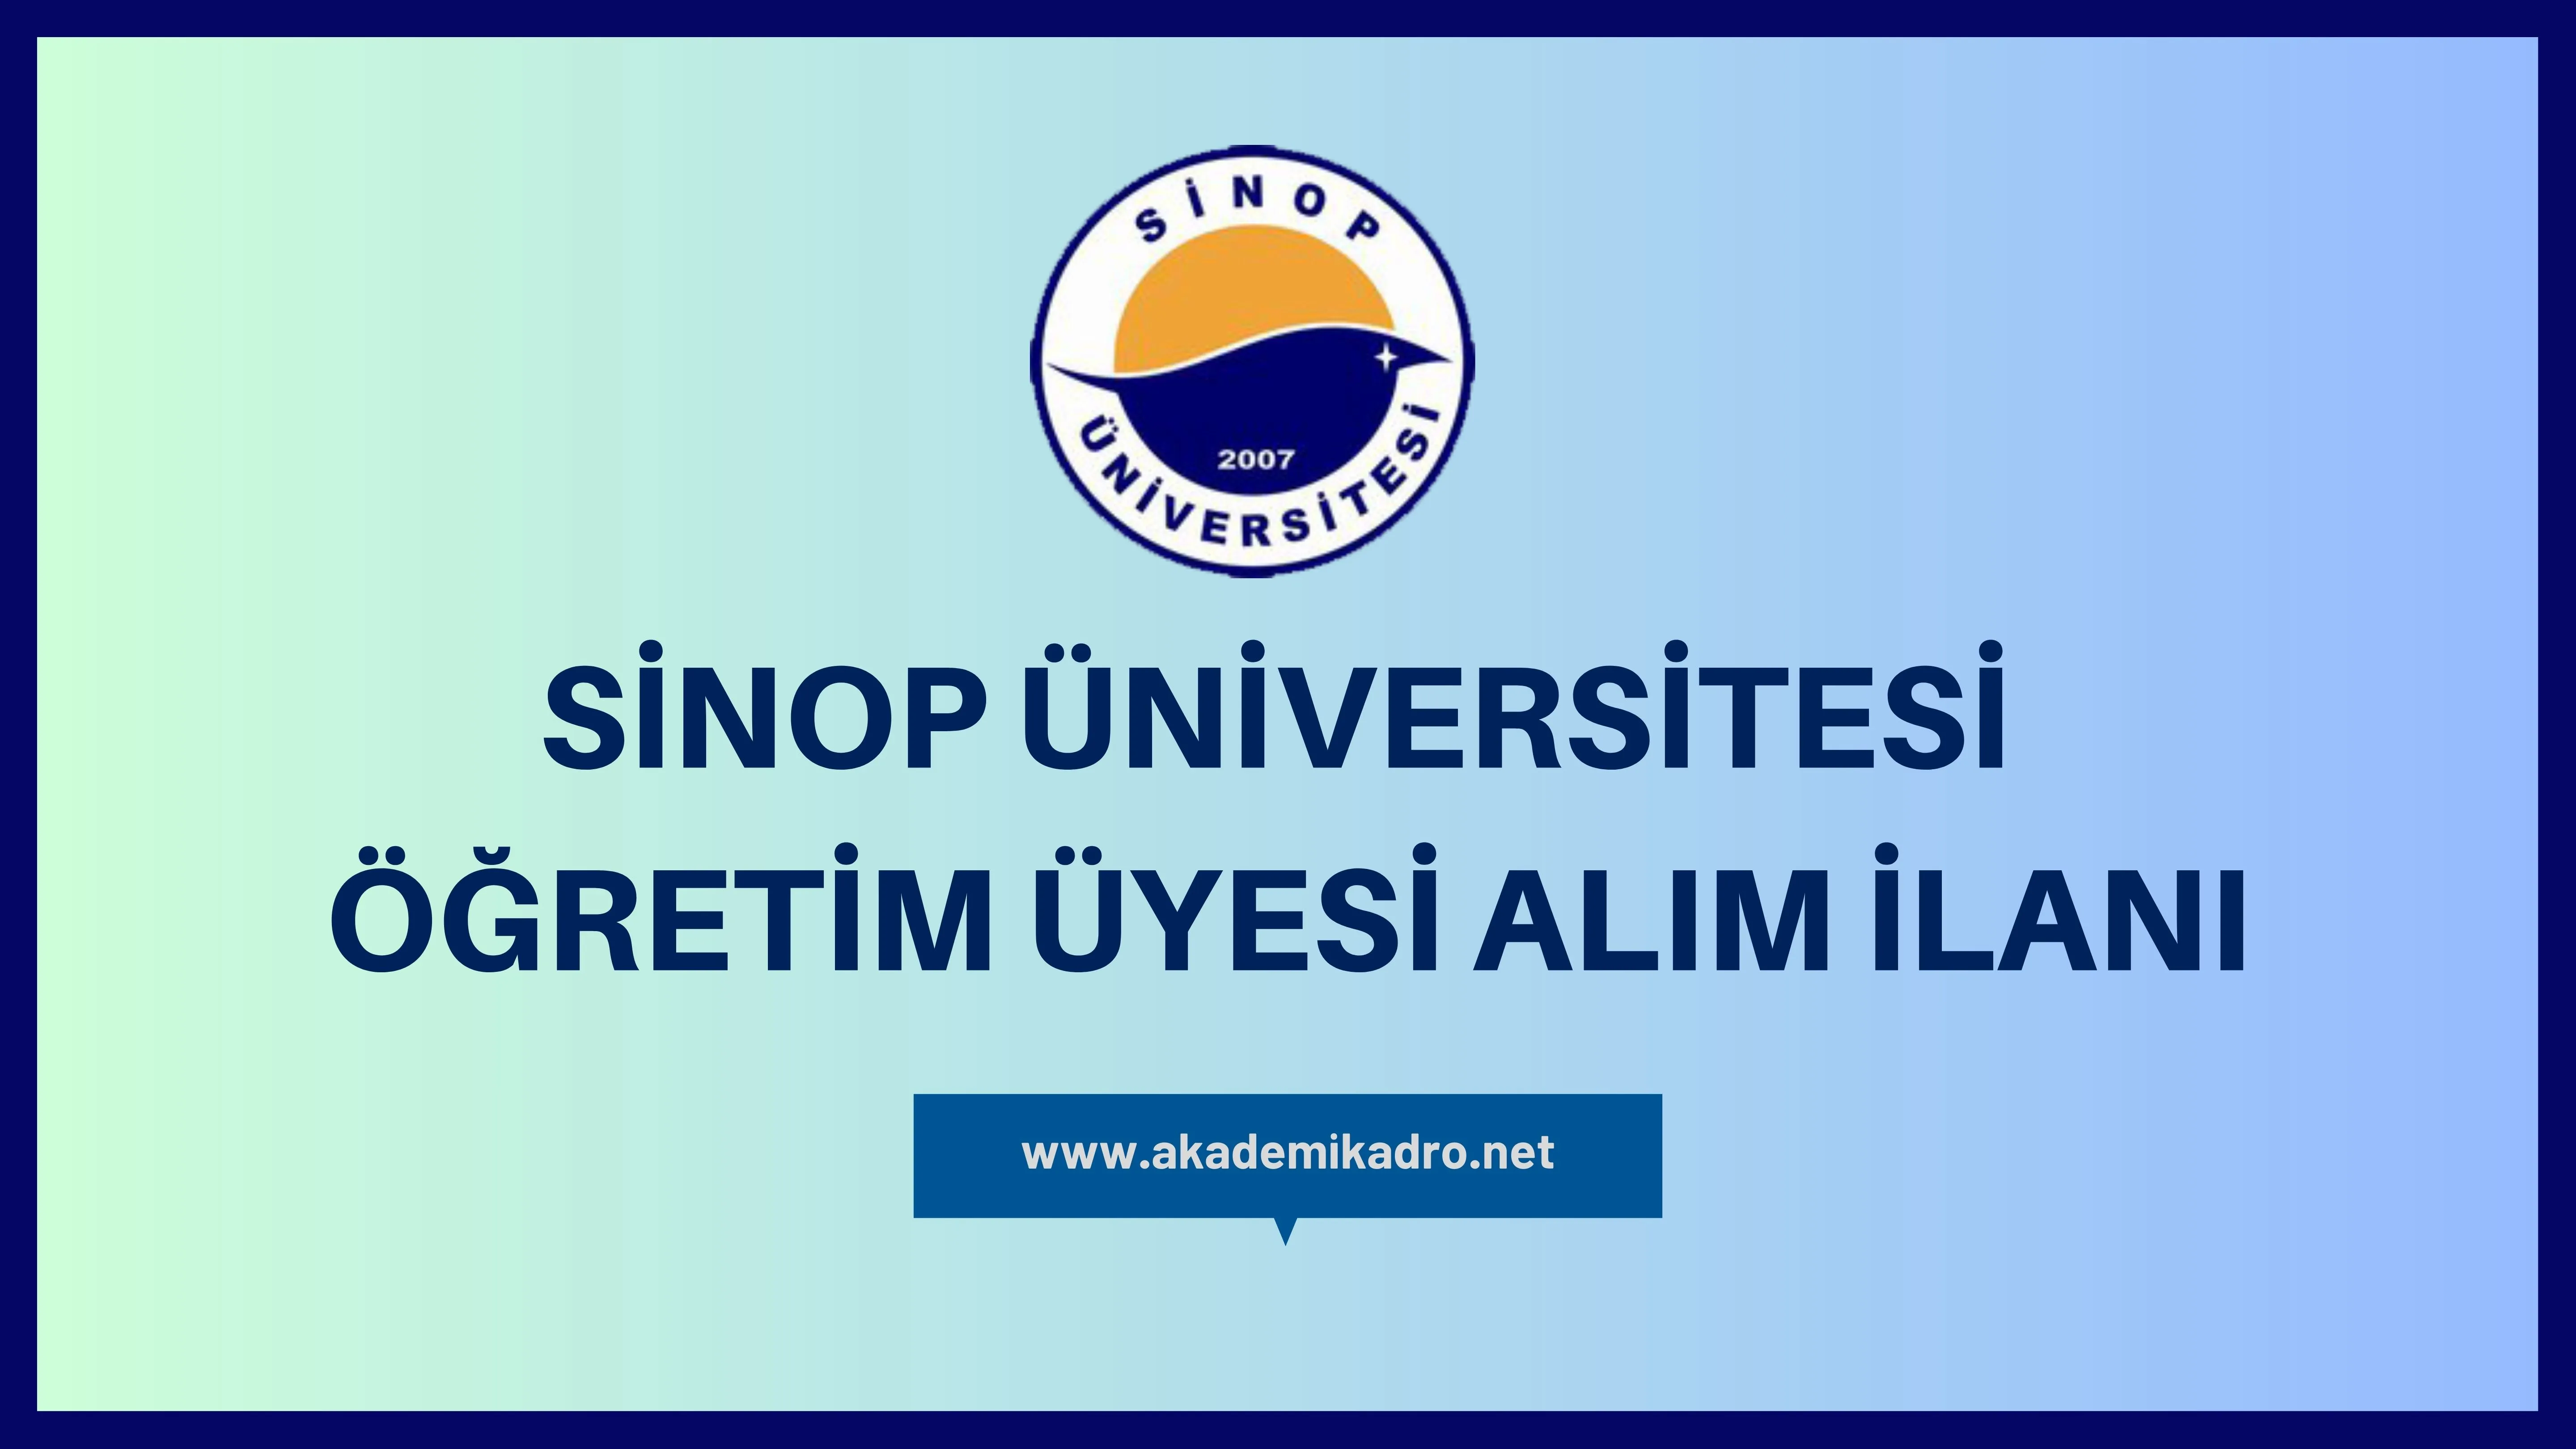 Sinop Üniversitesi birçok alandan 10 Öğretim üyesi alacak. 